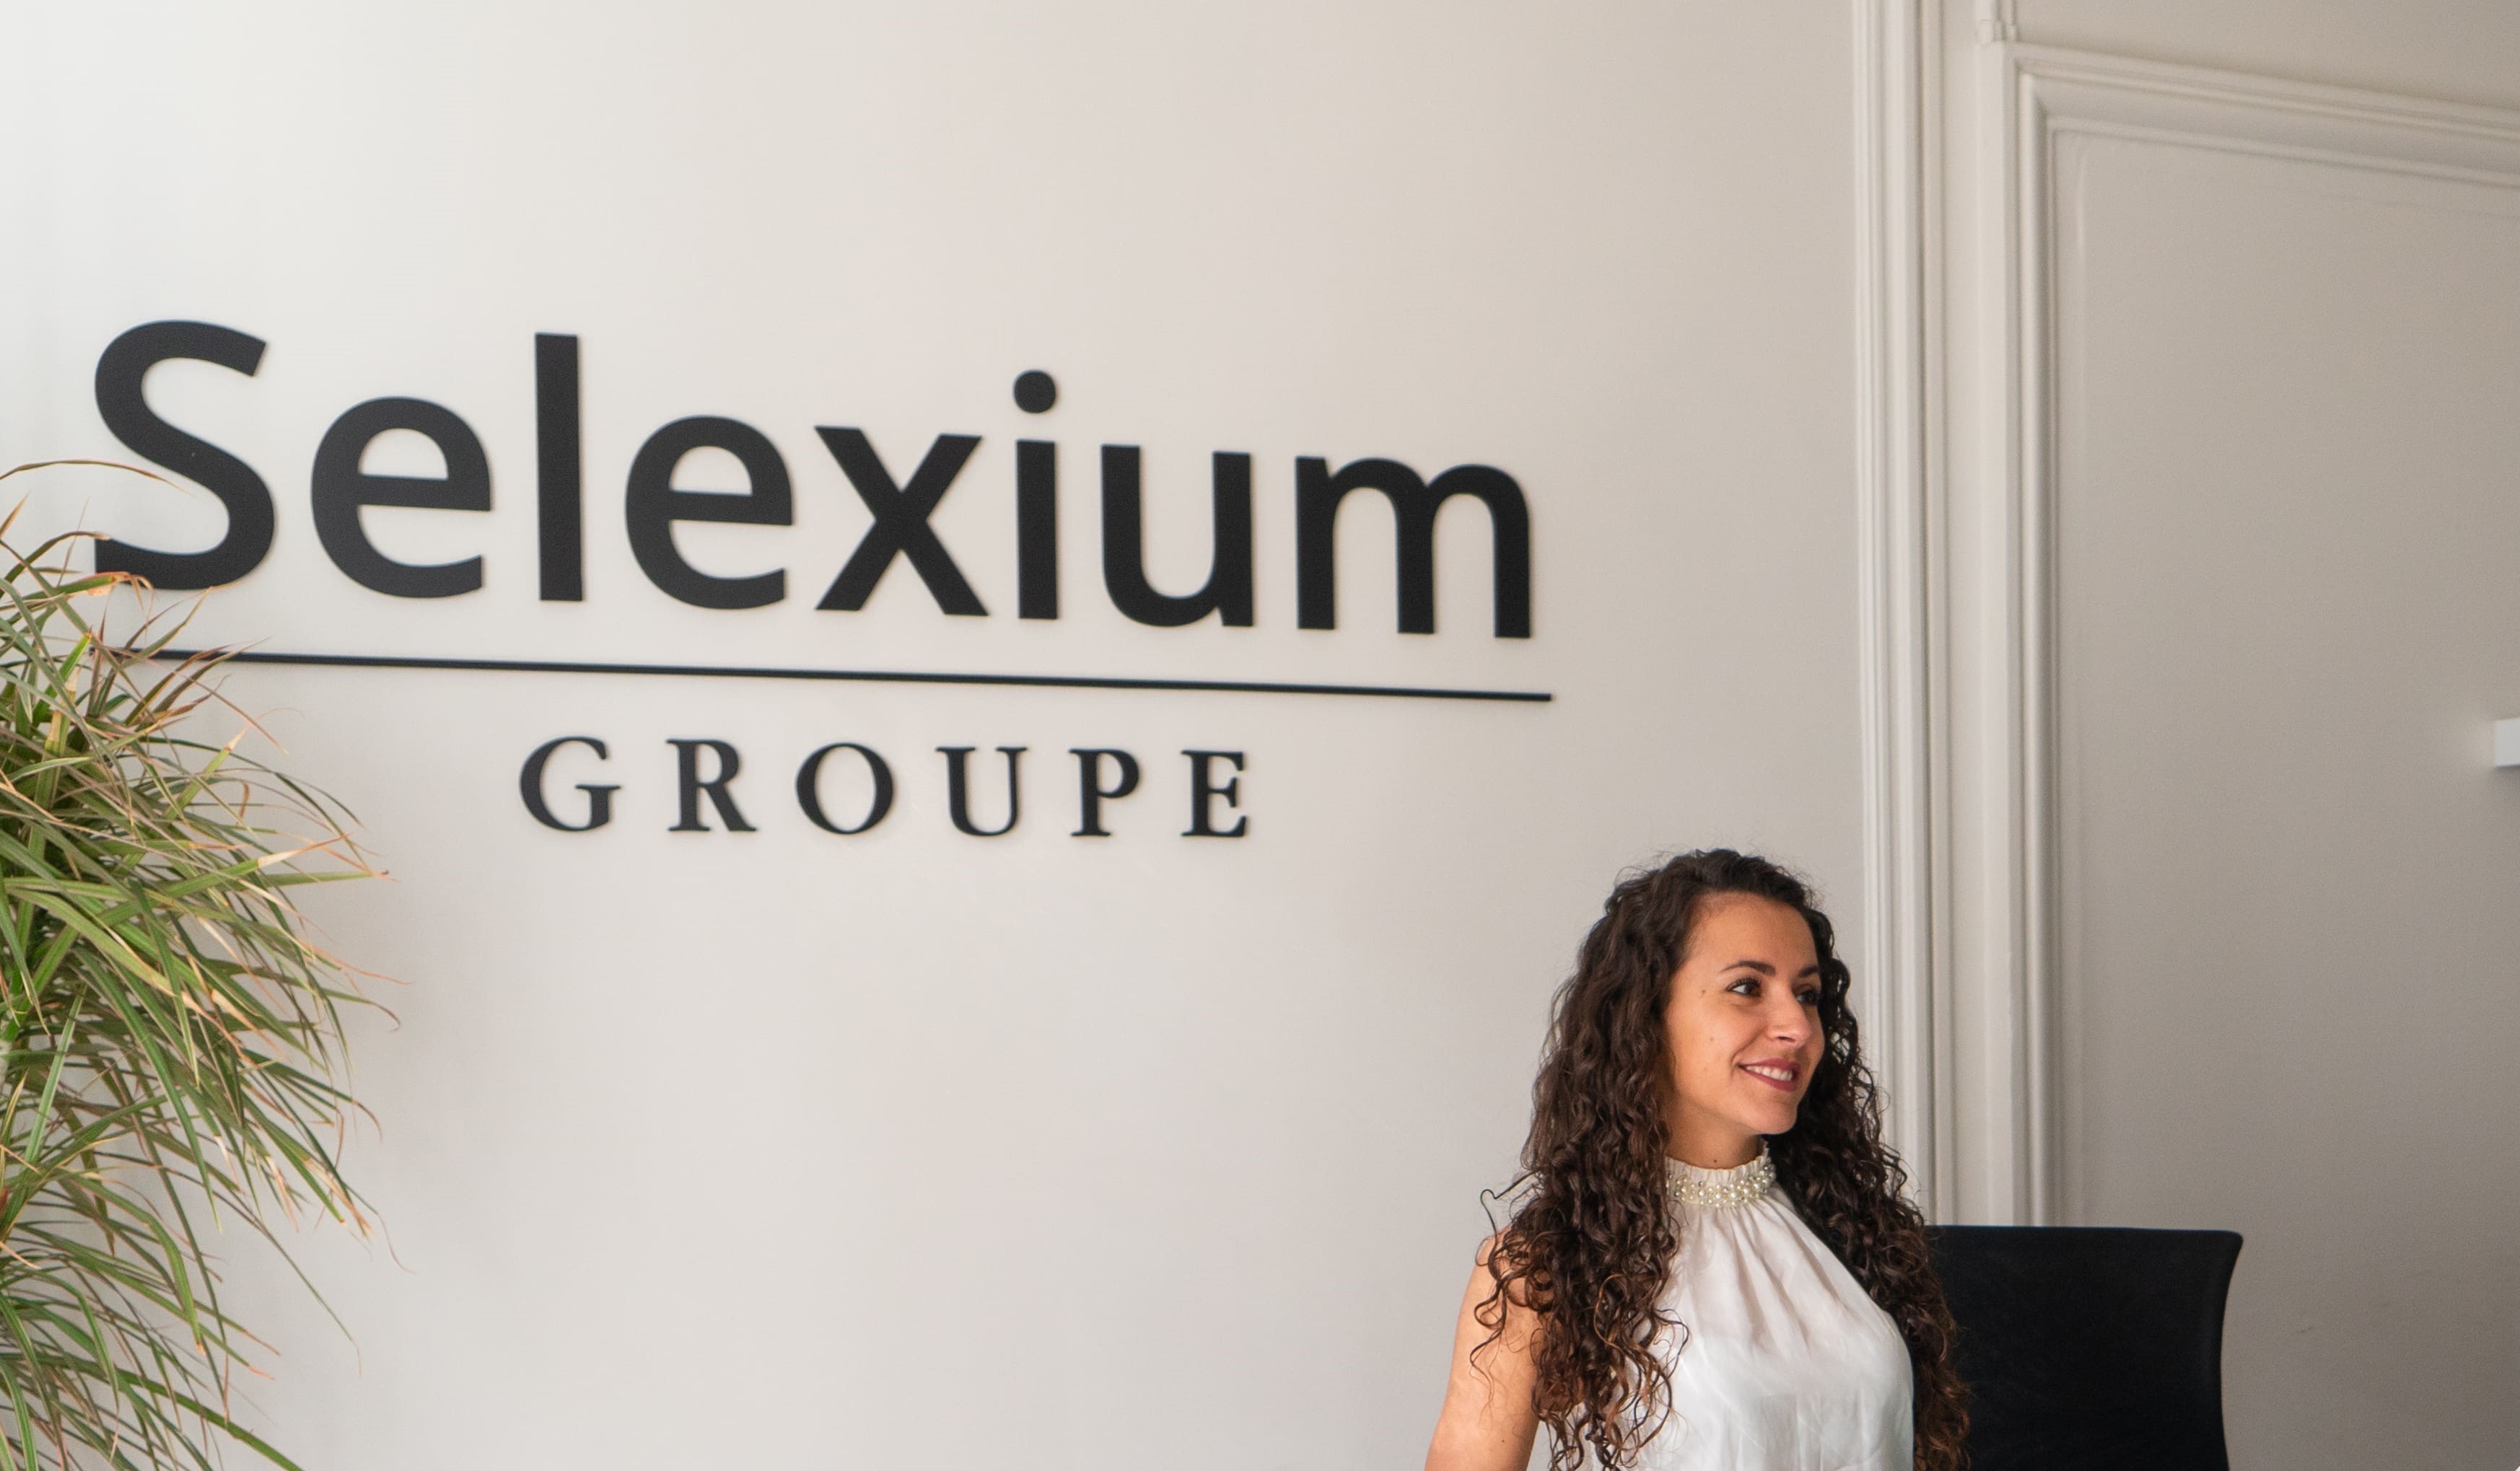 Recrutement: Apprenti(e) office assistant(e) (F/H) chez SELEXIUM à Paris